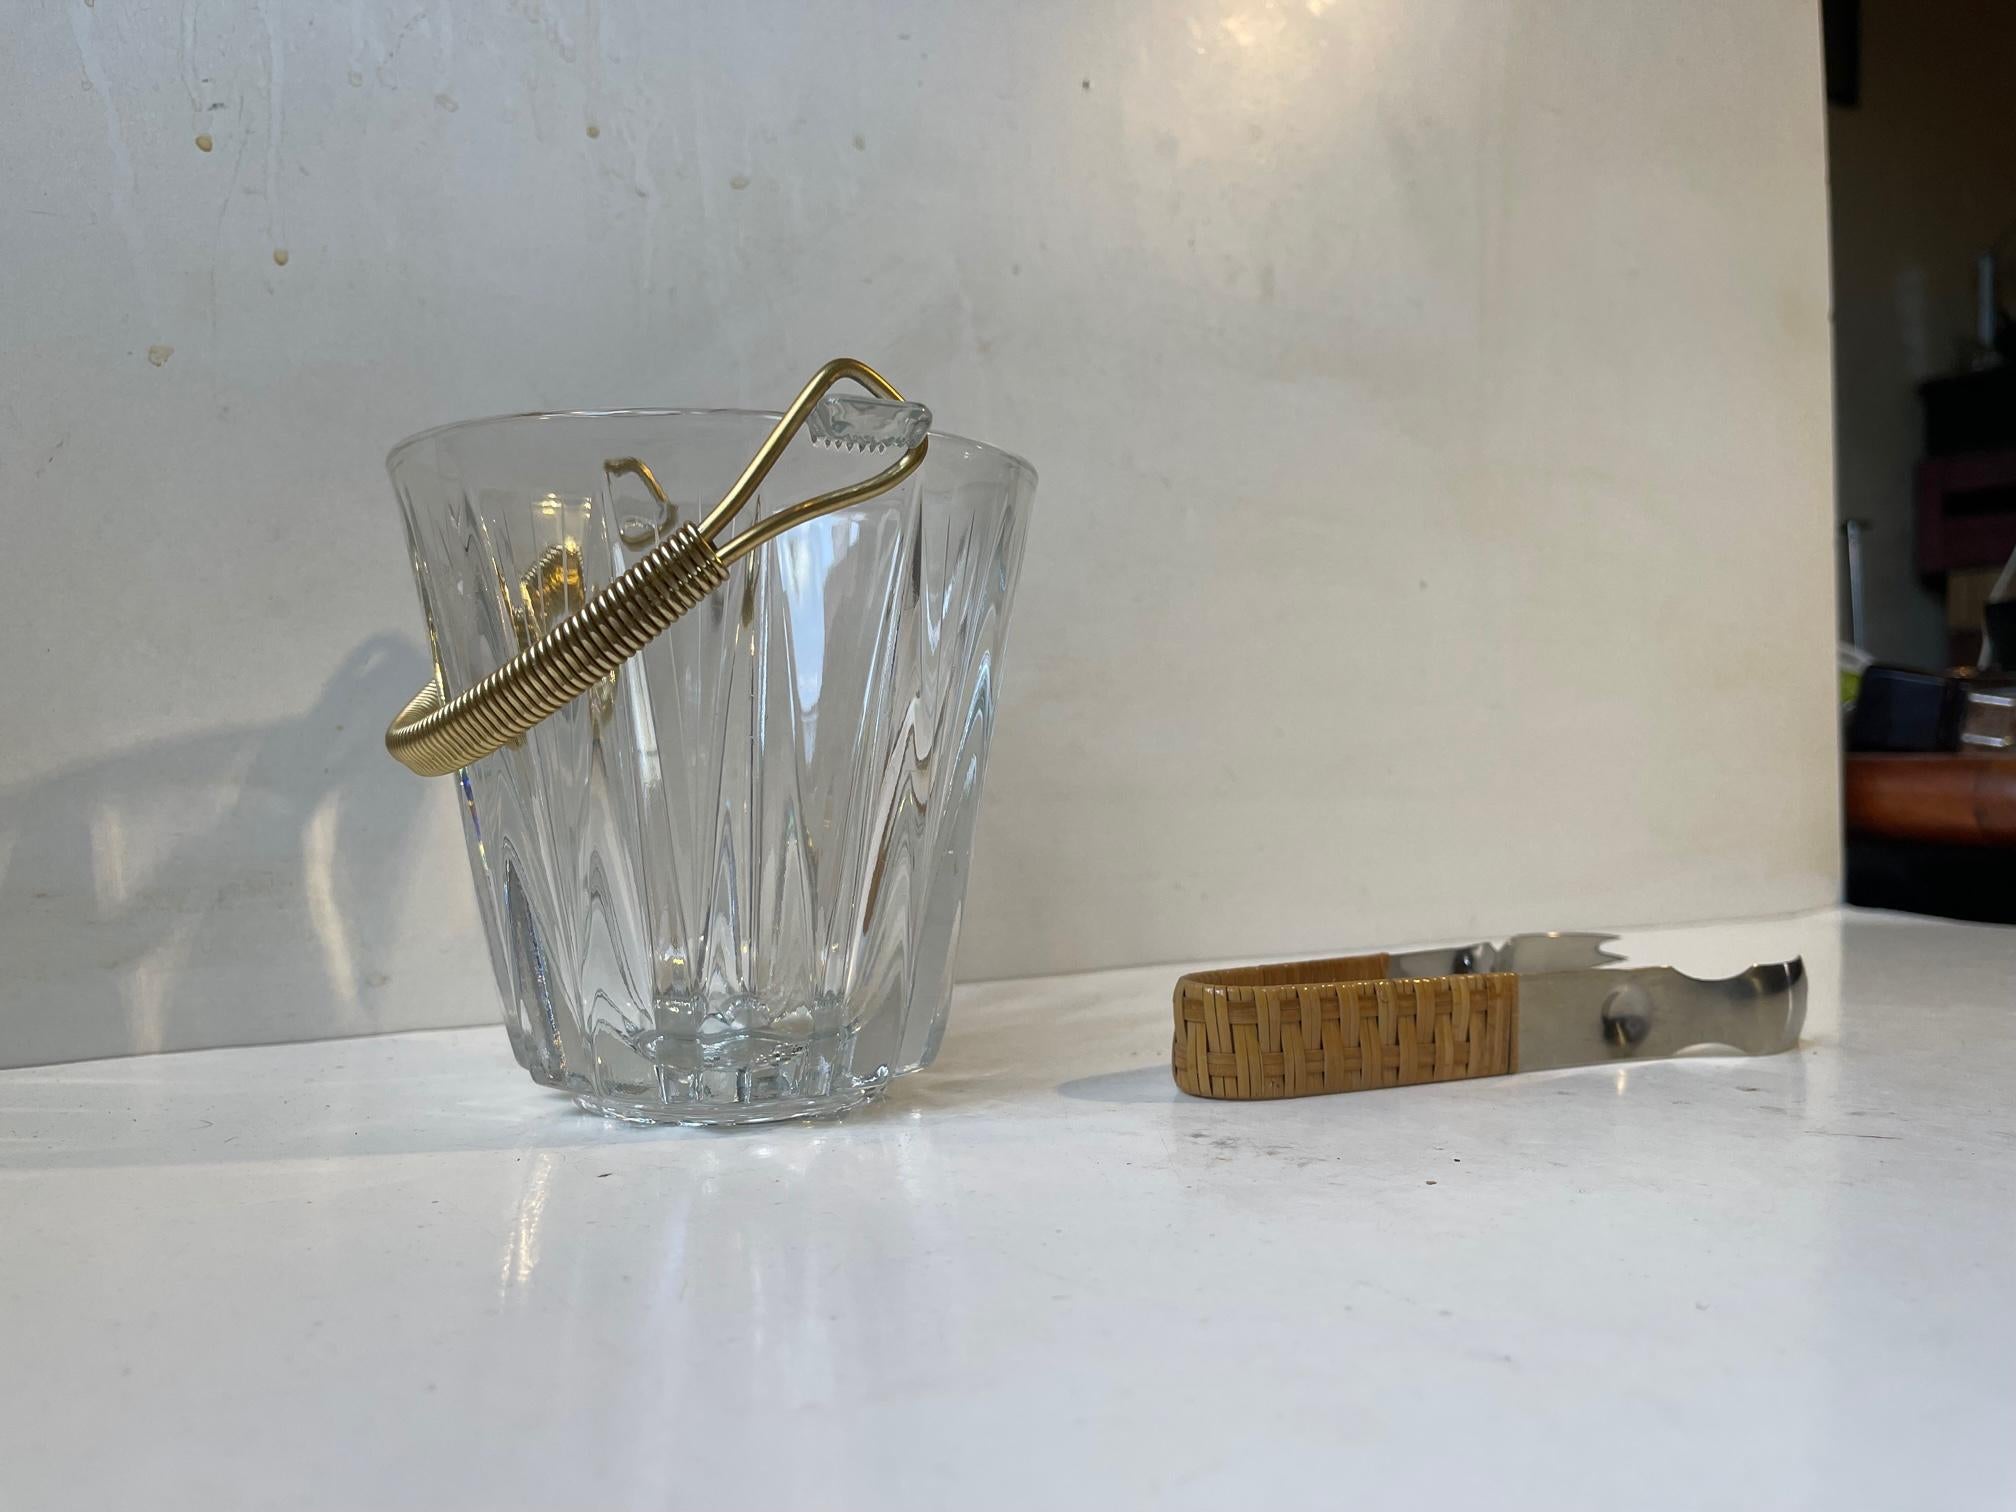 Un seau à glace élégant de petite taille, doté d'une poignée en aluminium anodisé doré et d'une pince en acier inoxydable avec manche en rotin. Le seau à glace a été fabriqué en Italie vers 1960-70. Le tong datant de la même période pourrait être